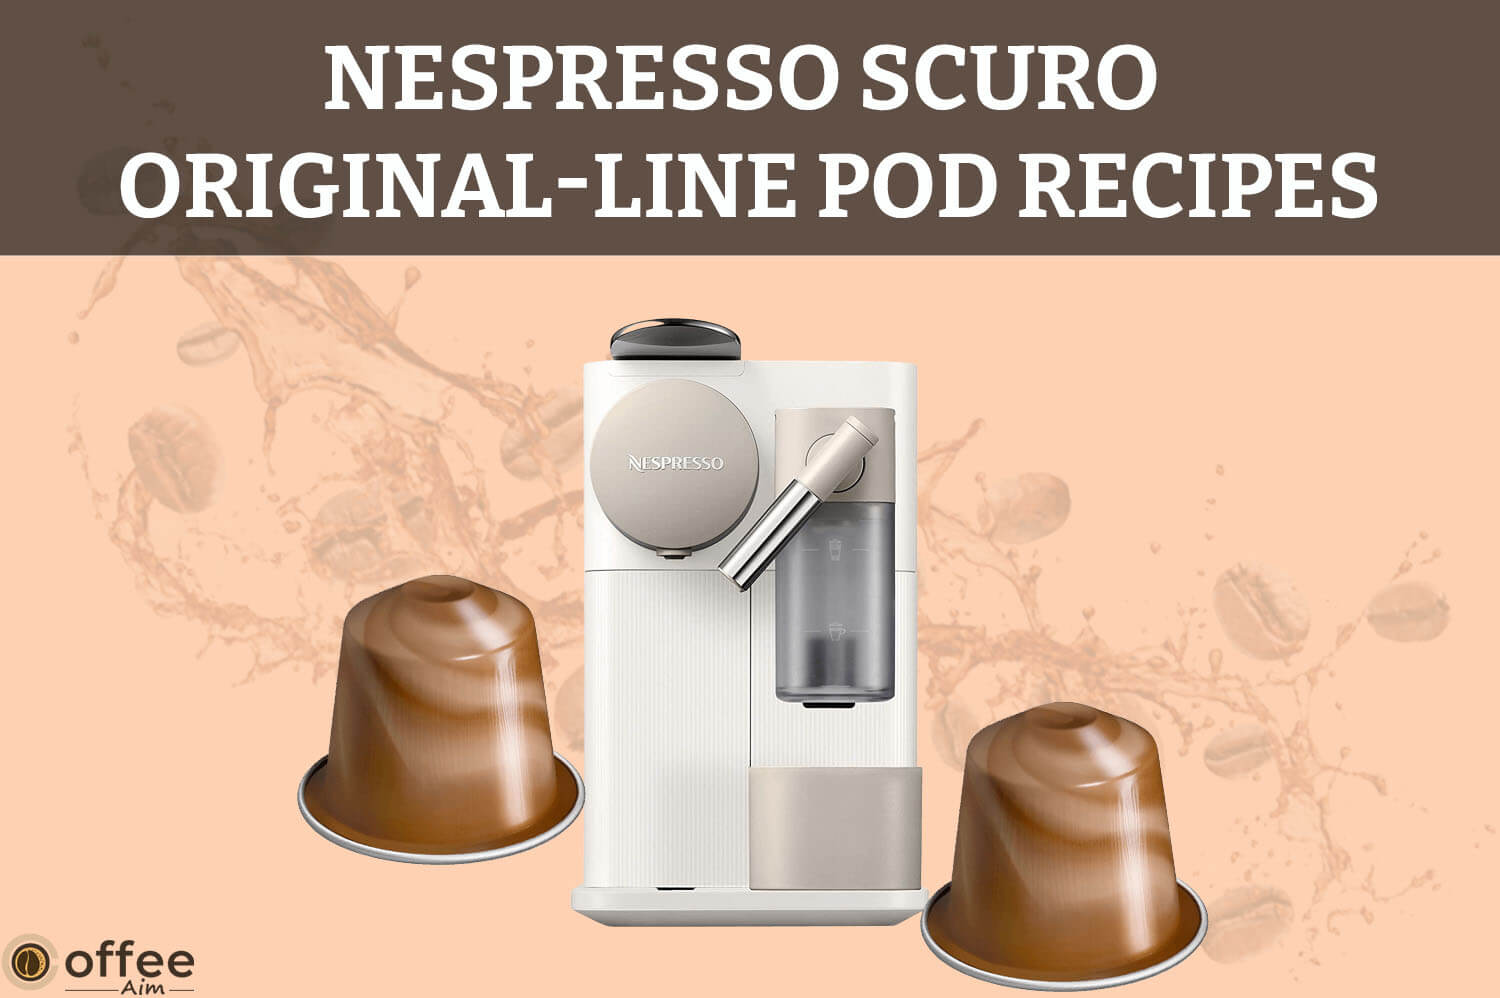 Nespresso-Scuro-Original-Line-Pod-Recipes